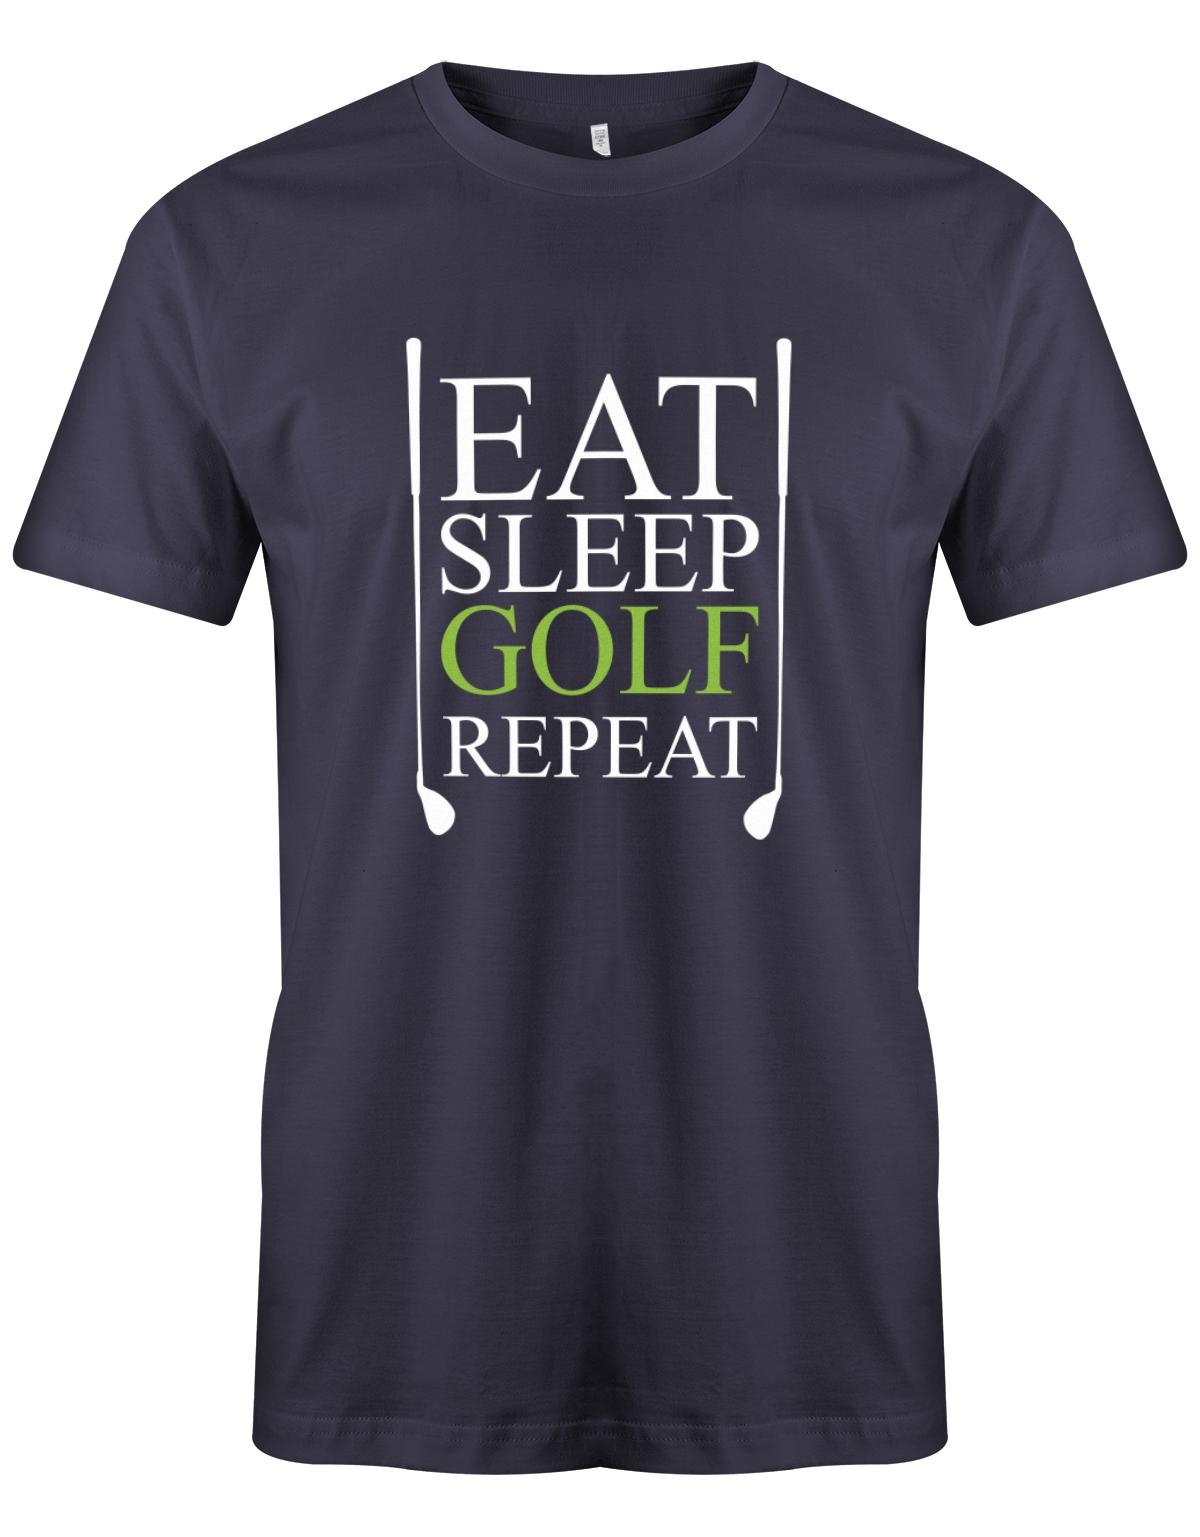 East-Sleep-golf-Repeat-Herren-Shirt-NAvy